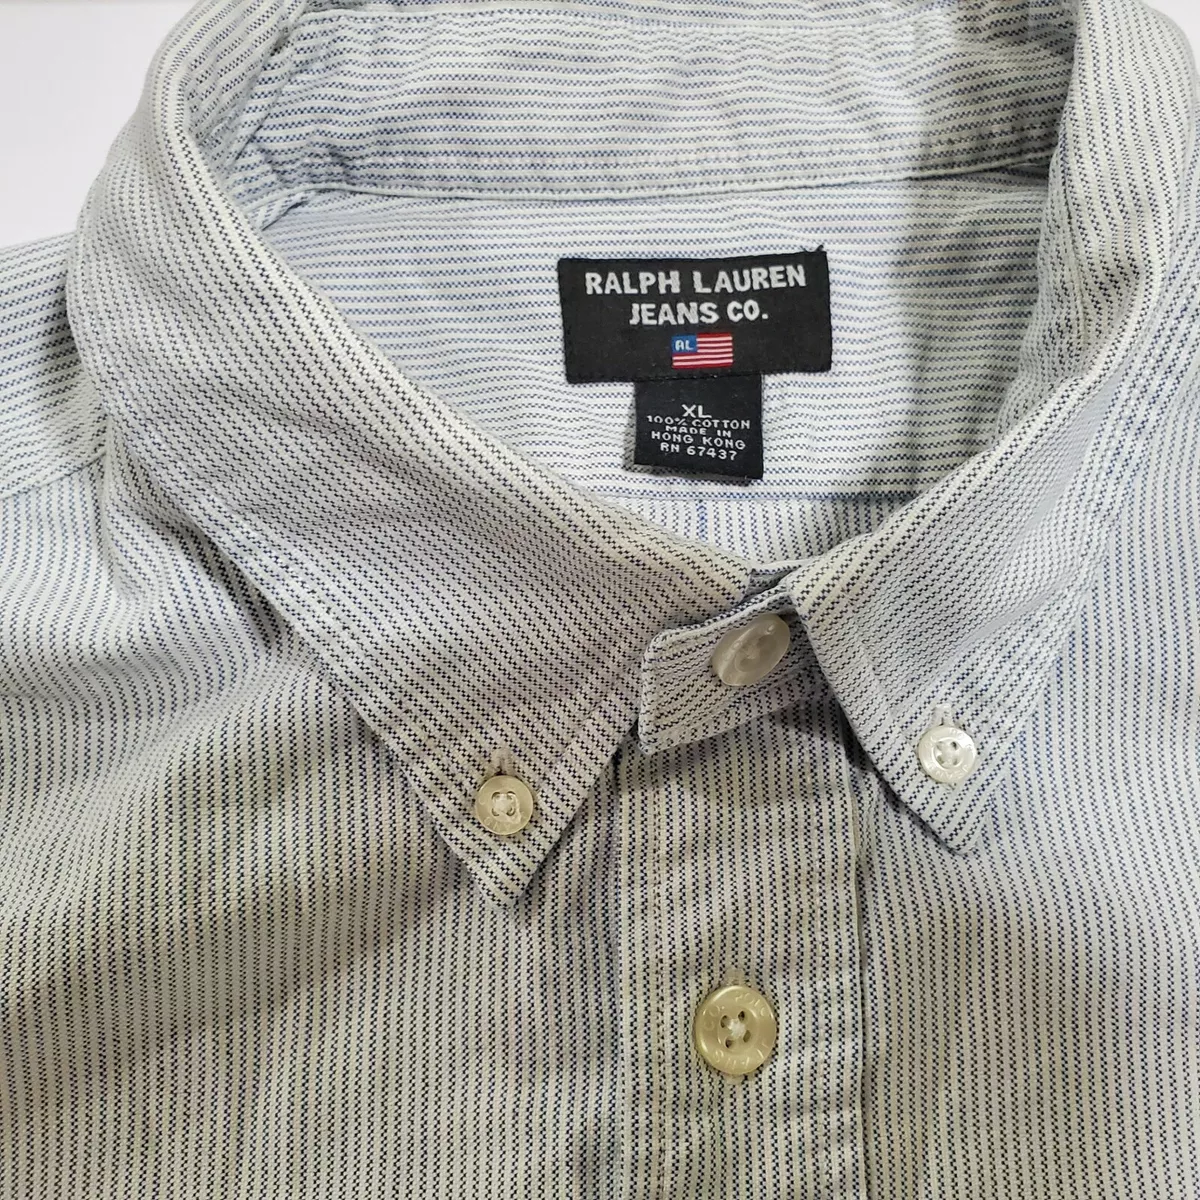 Vintage Polo Jeans Co Ralph Lauren Button Up Shirt 90's Size 